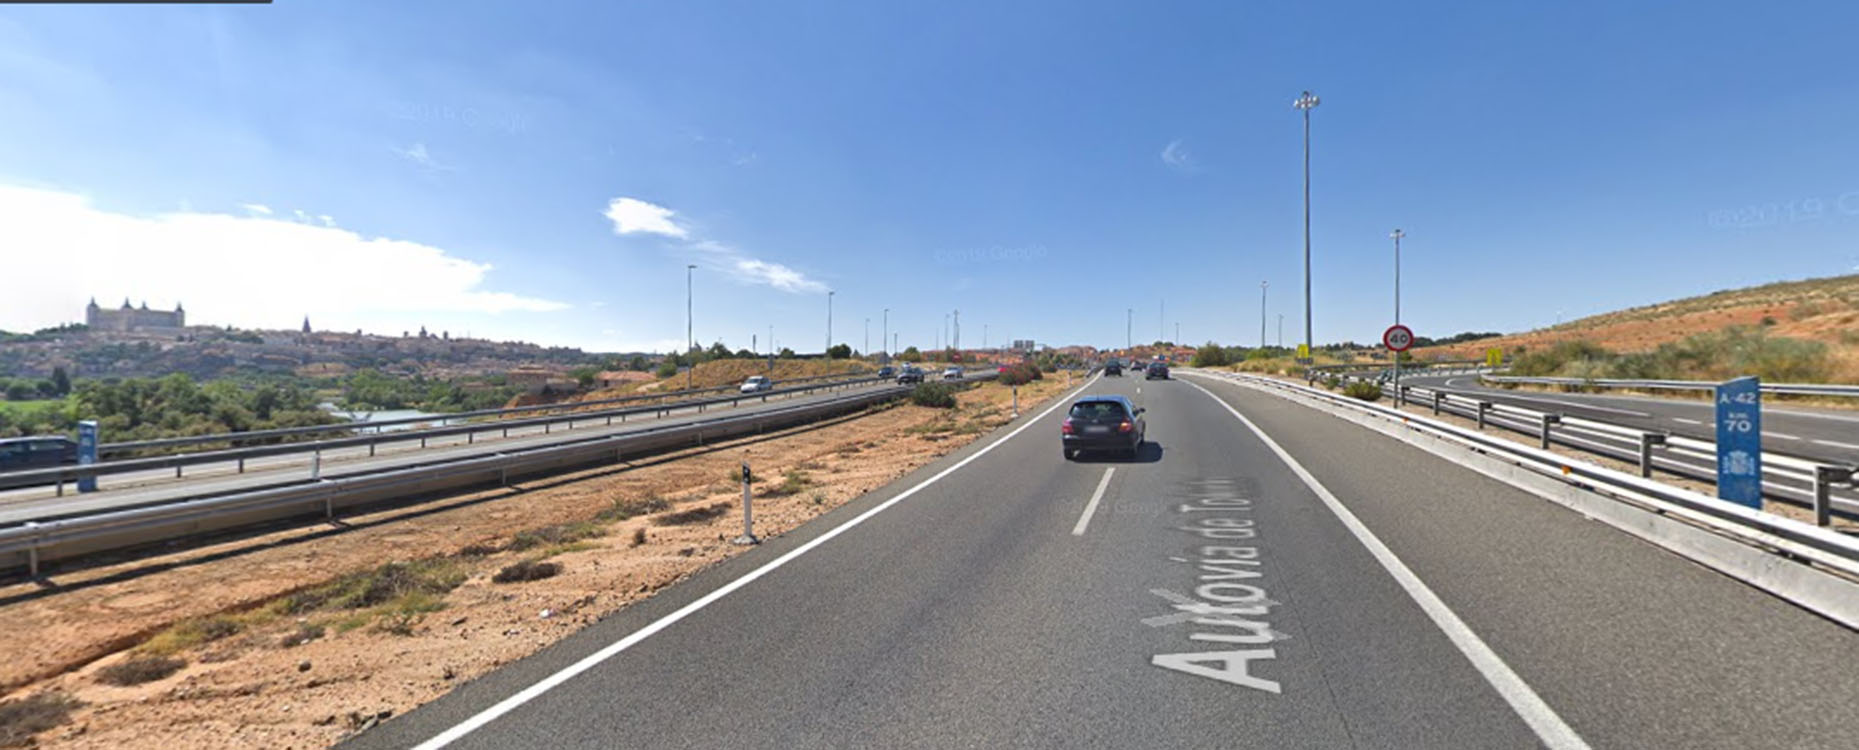 El accidente se ha producido en el kilómetro 70 de la autovía A-42, justo antes de que la carretera se divida en cuatro carriles: dos en dirección Ávila y otros dos en dirección a Madrid.